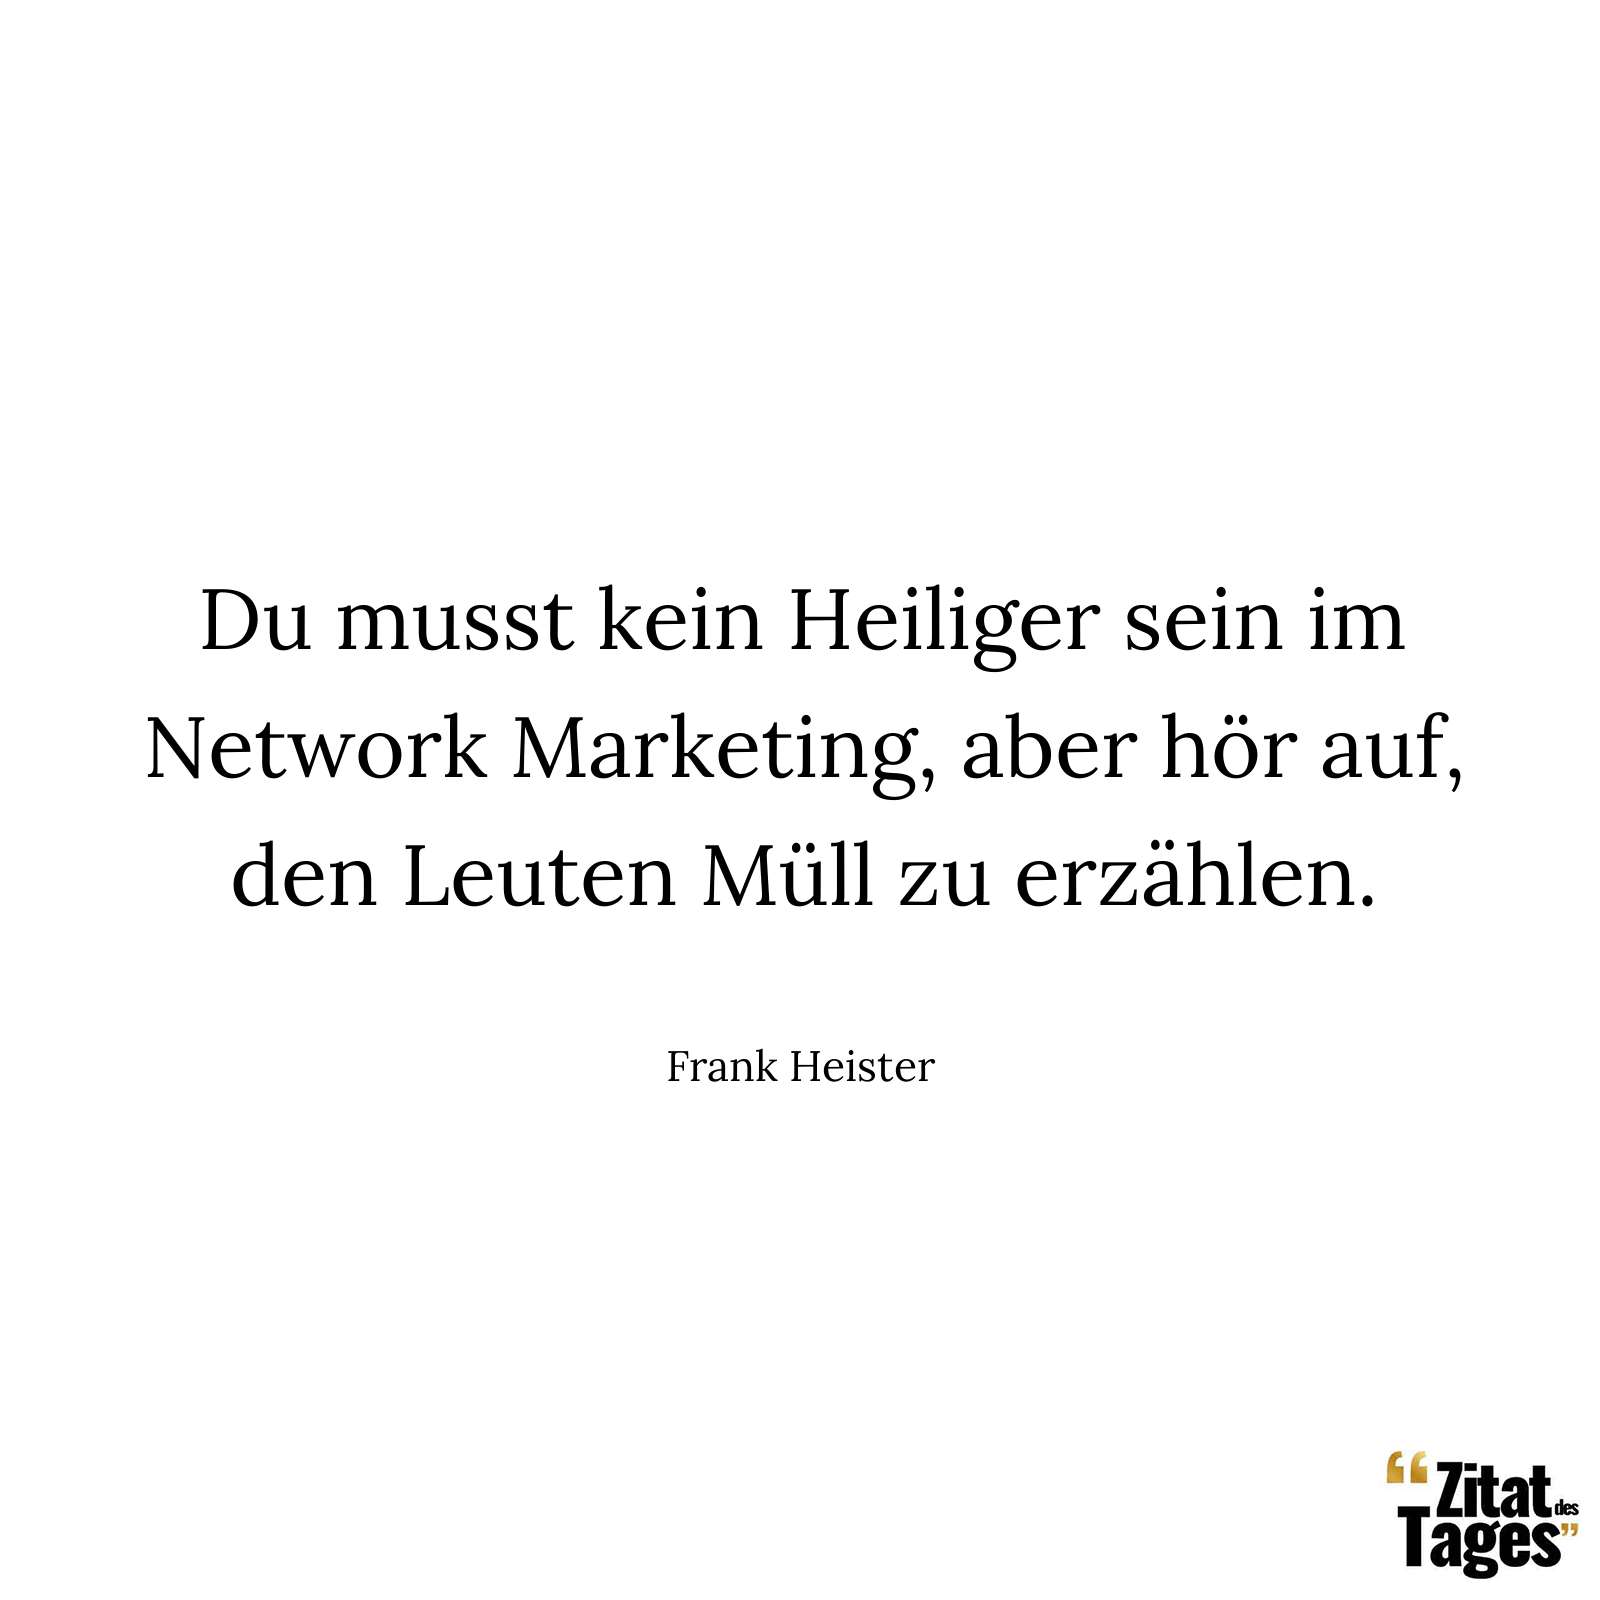 Du musst kein Heiliger sein im Network Marketing, aber hör auf, den Leuten Müll zu erzählen. - Frank Heister